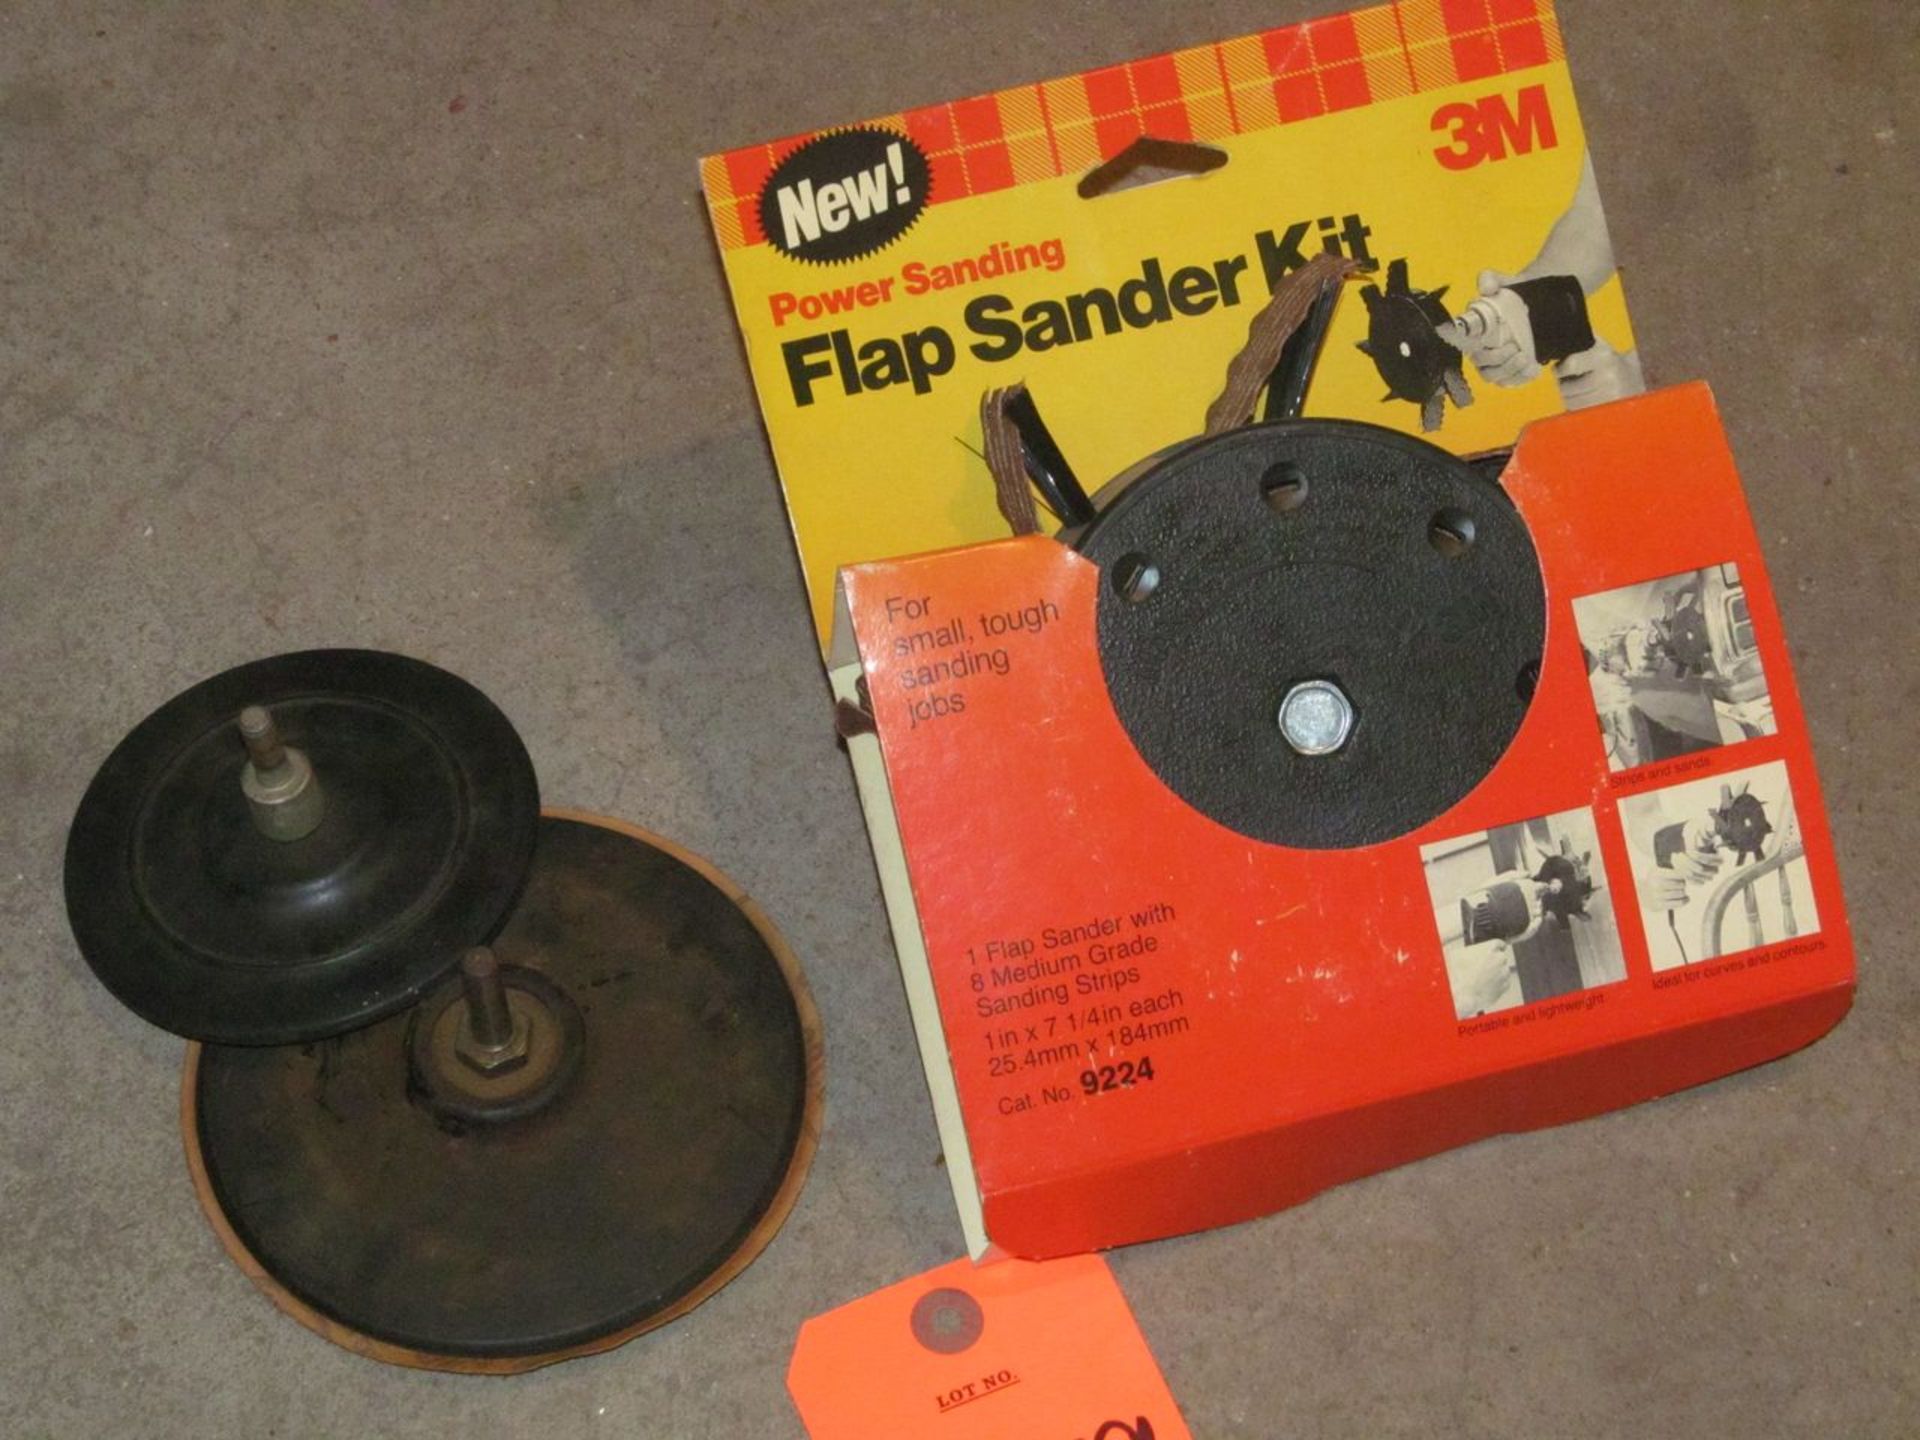 Lot - (1) 3M Power Sanding Model 9224 "Flap Sander" Kit (New in Packaging); and (2) Disk Sanding